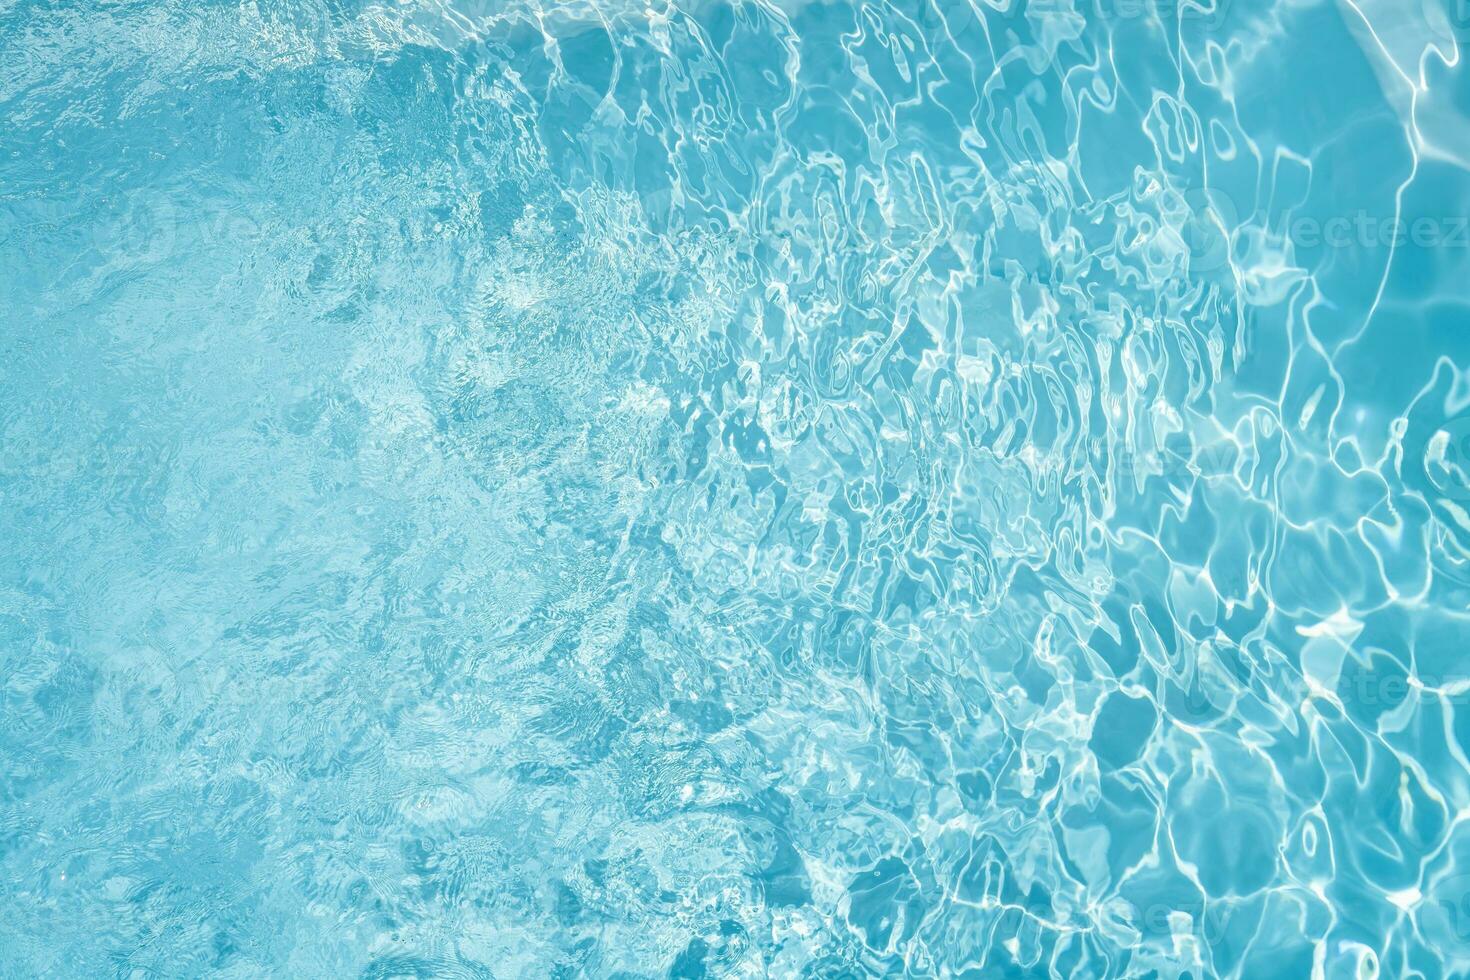 mirando abajo en un cristal claro piscina como viento causas un onda efecto foto